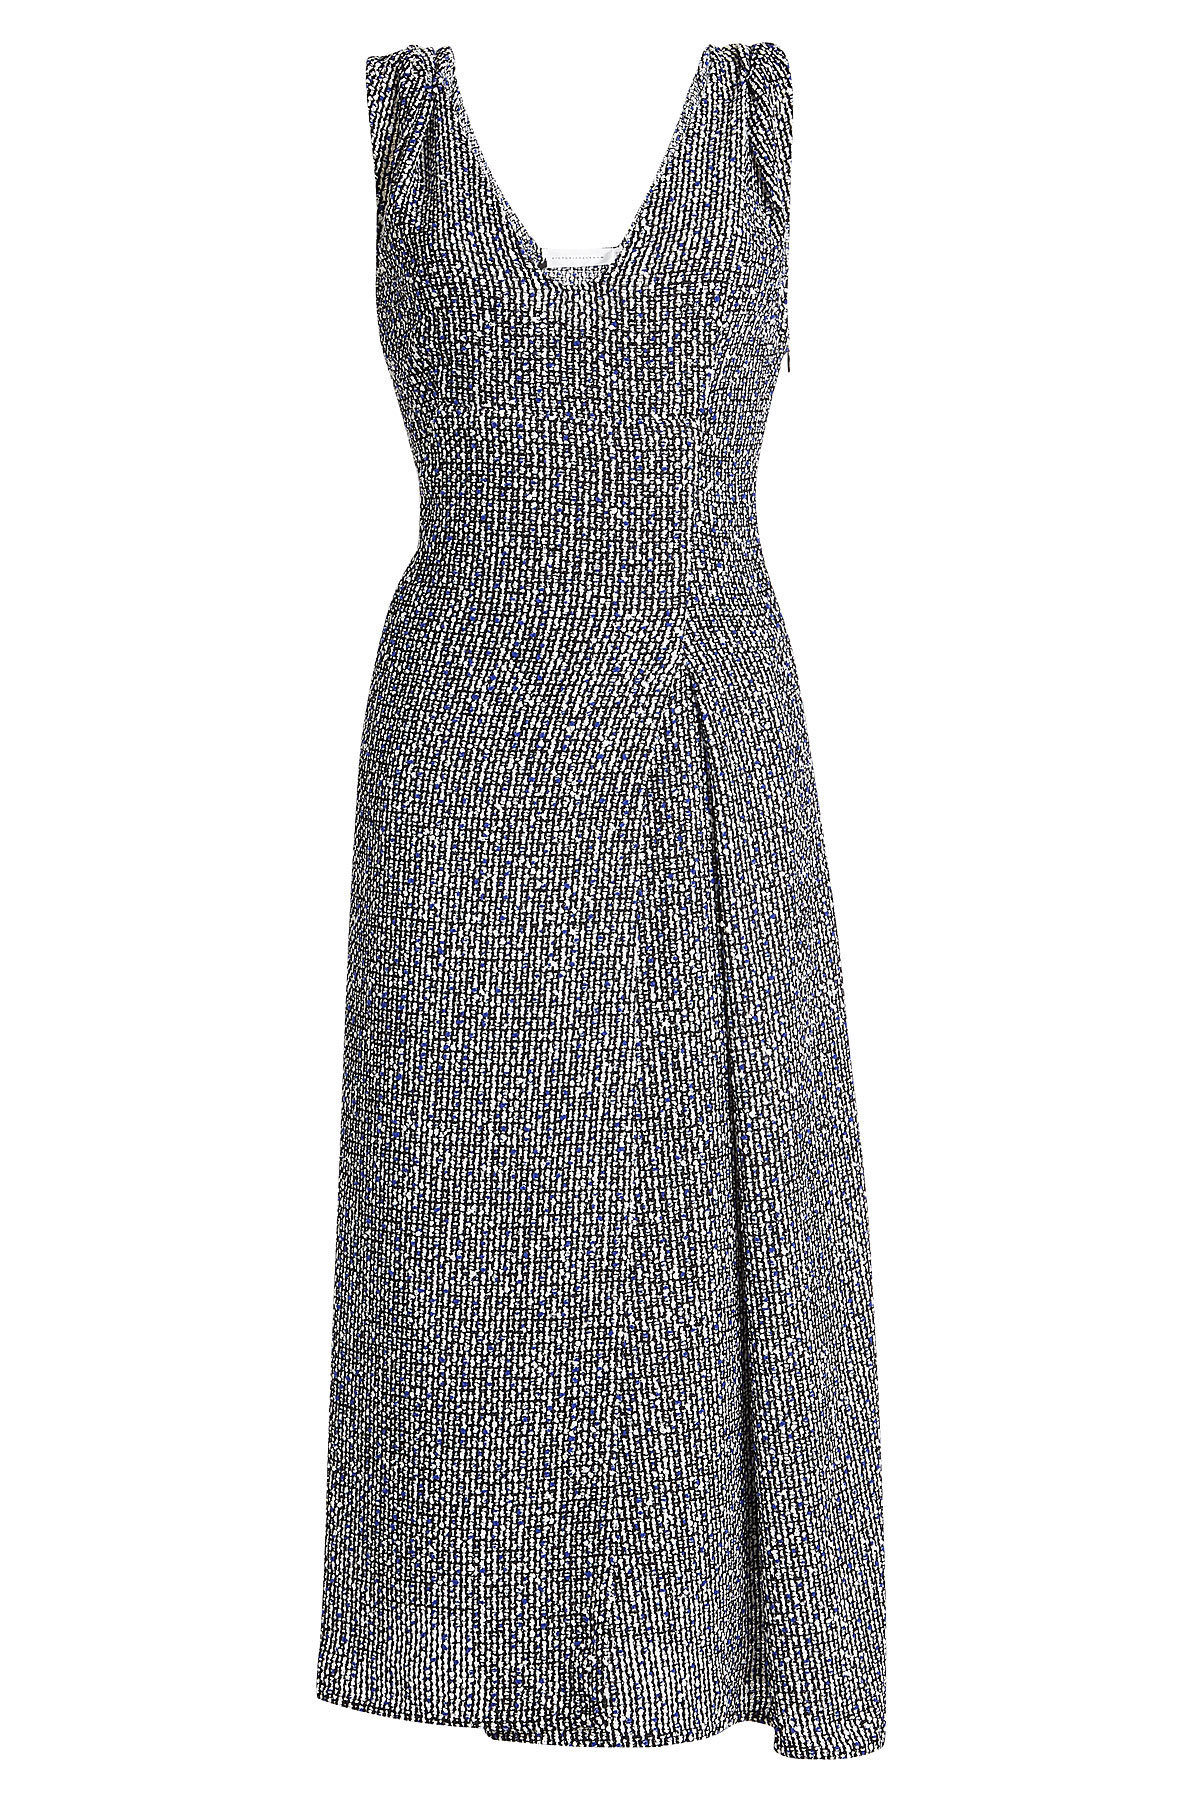 Victoria Beckham - Bouclé Dress with Linen